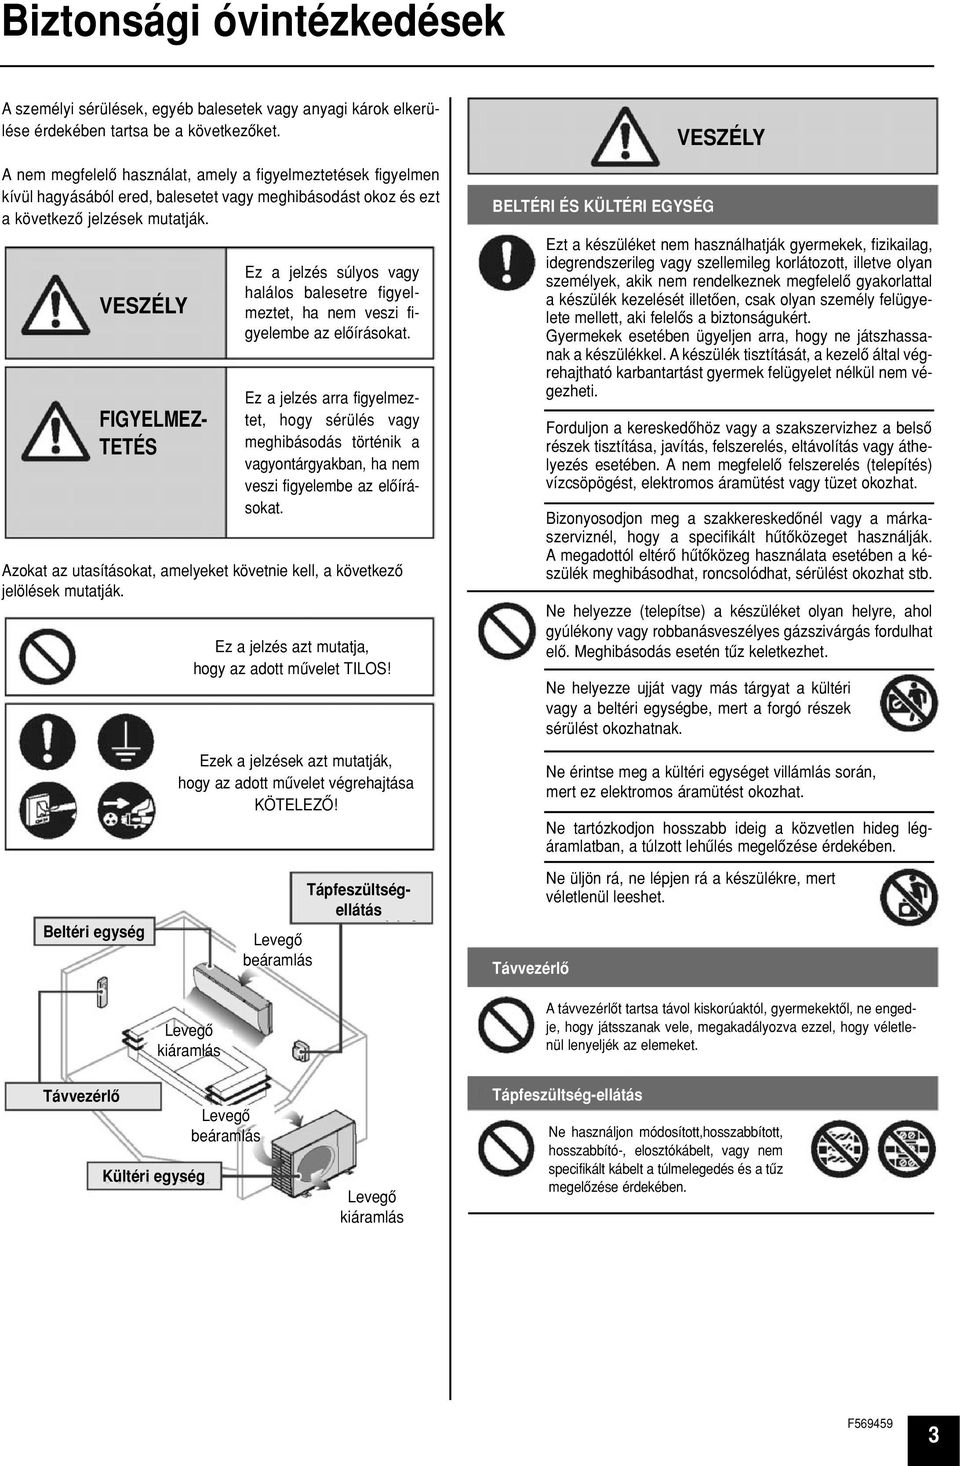 Panasonic. Kezelési útmutató Szobai légkondicionáló készülékekhez.  Tartalomjegyzék. Tartozékok. Beltéri egység. Kültéri egység - PDF Free  Download